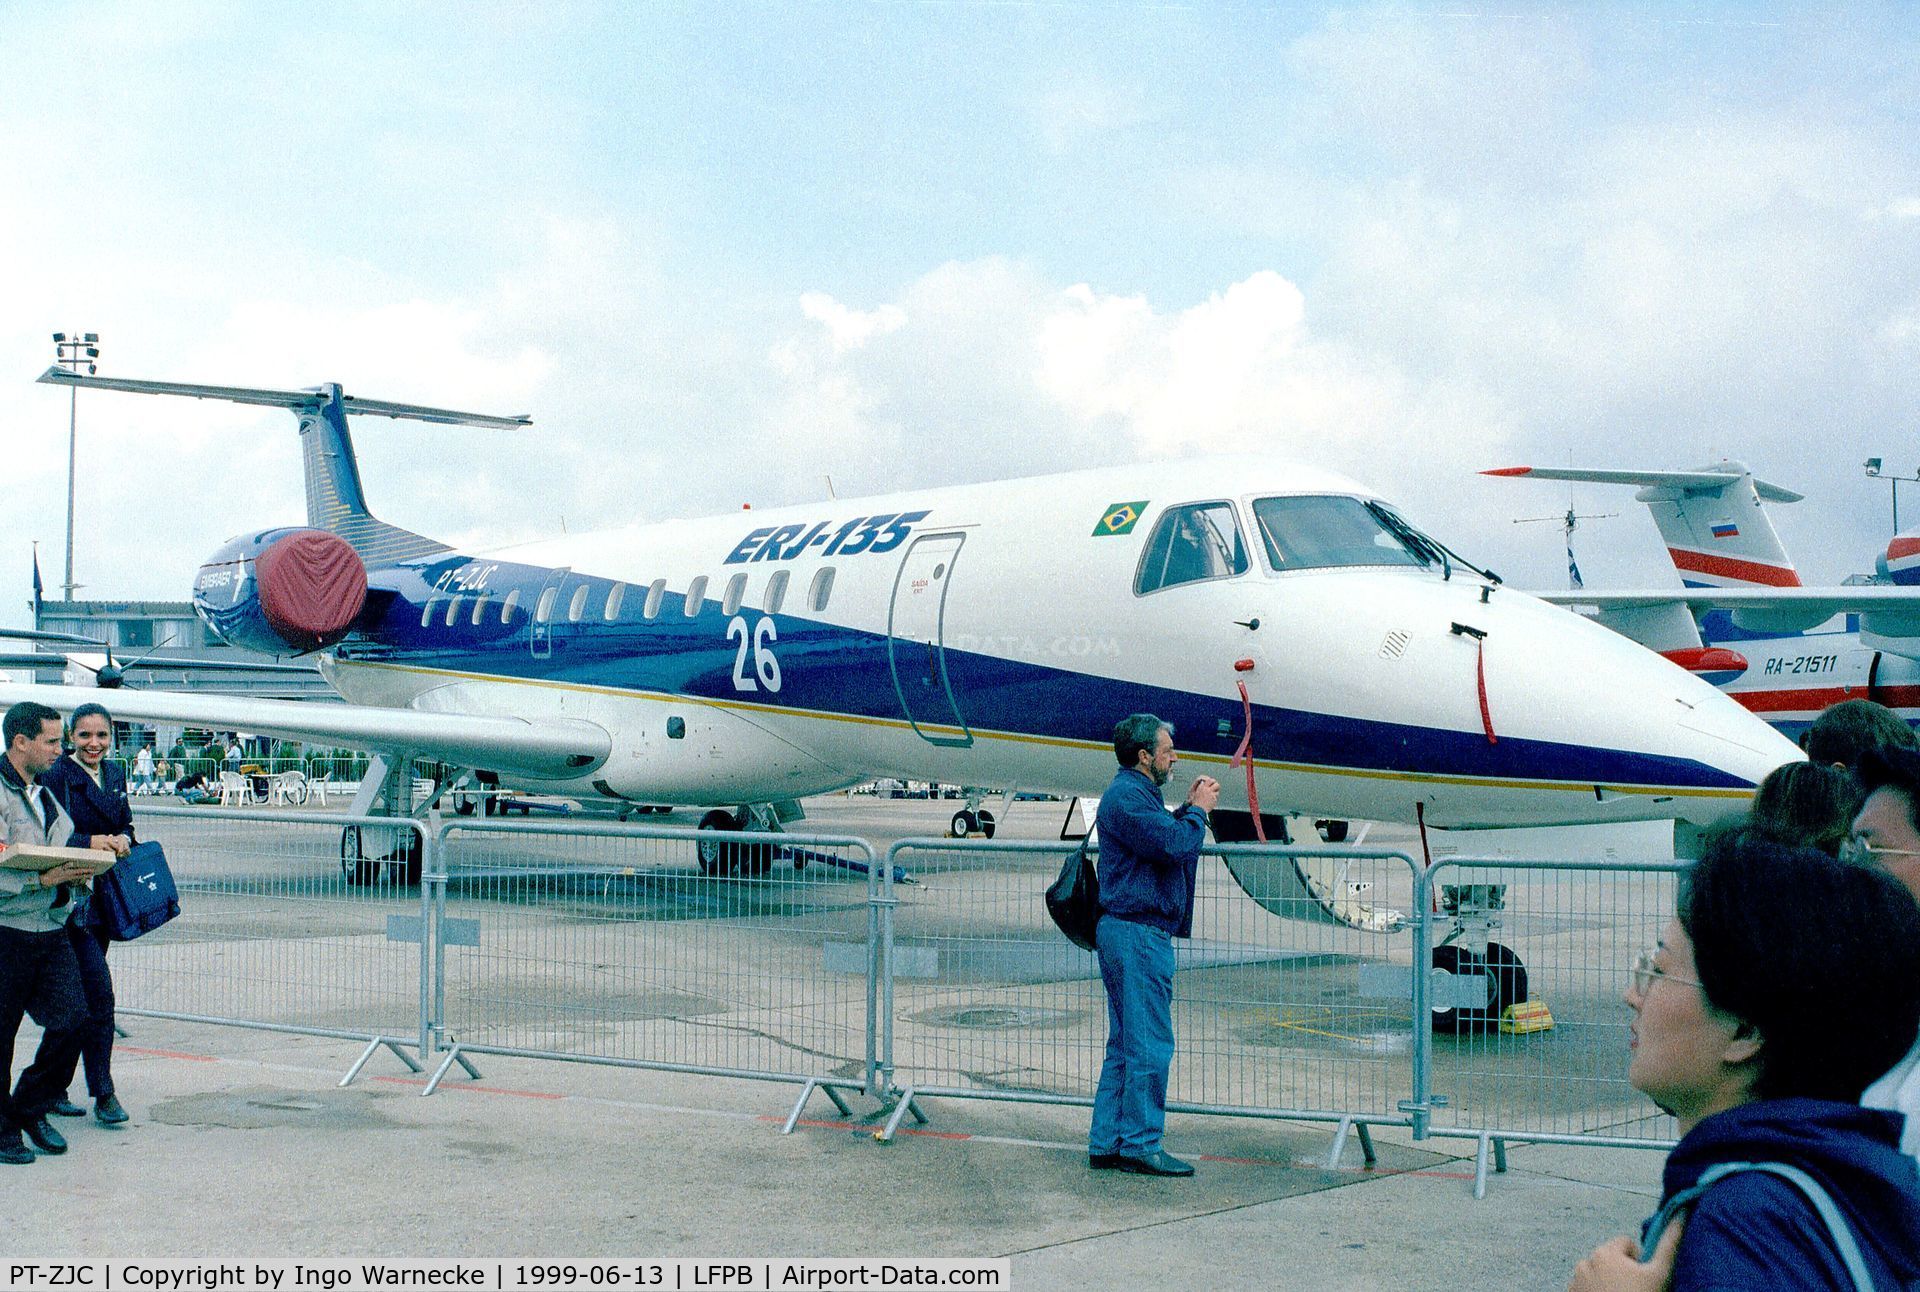 PT-ZJC, 1996 Embraer ERJ-135ER (EMB-135ER) C/N 145002, EMBRAER EMB-135ER (converted from EMB-145LR) at the Aerosalon 1999, Paris